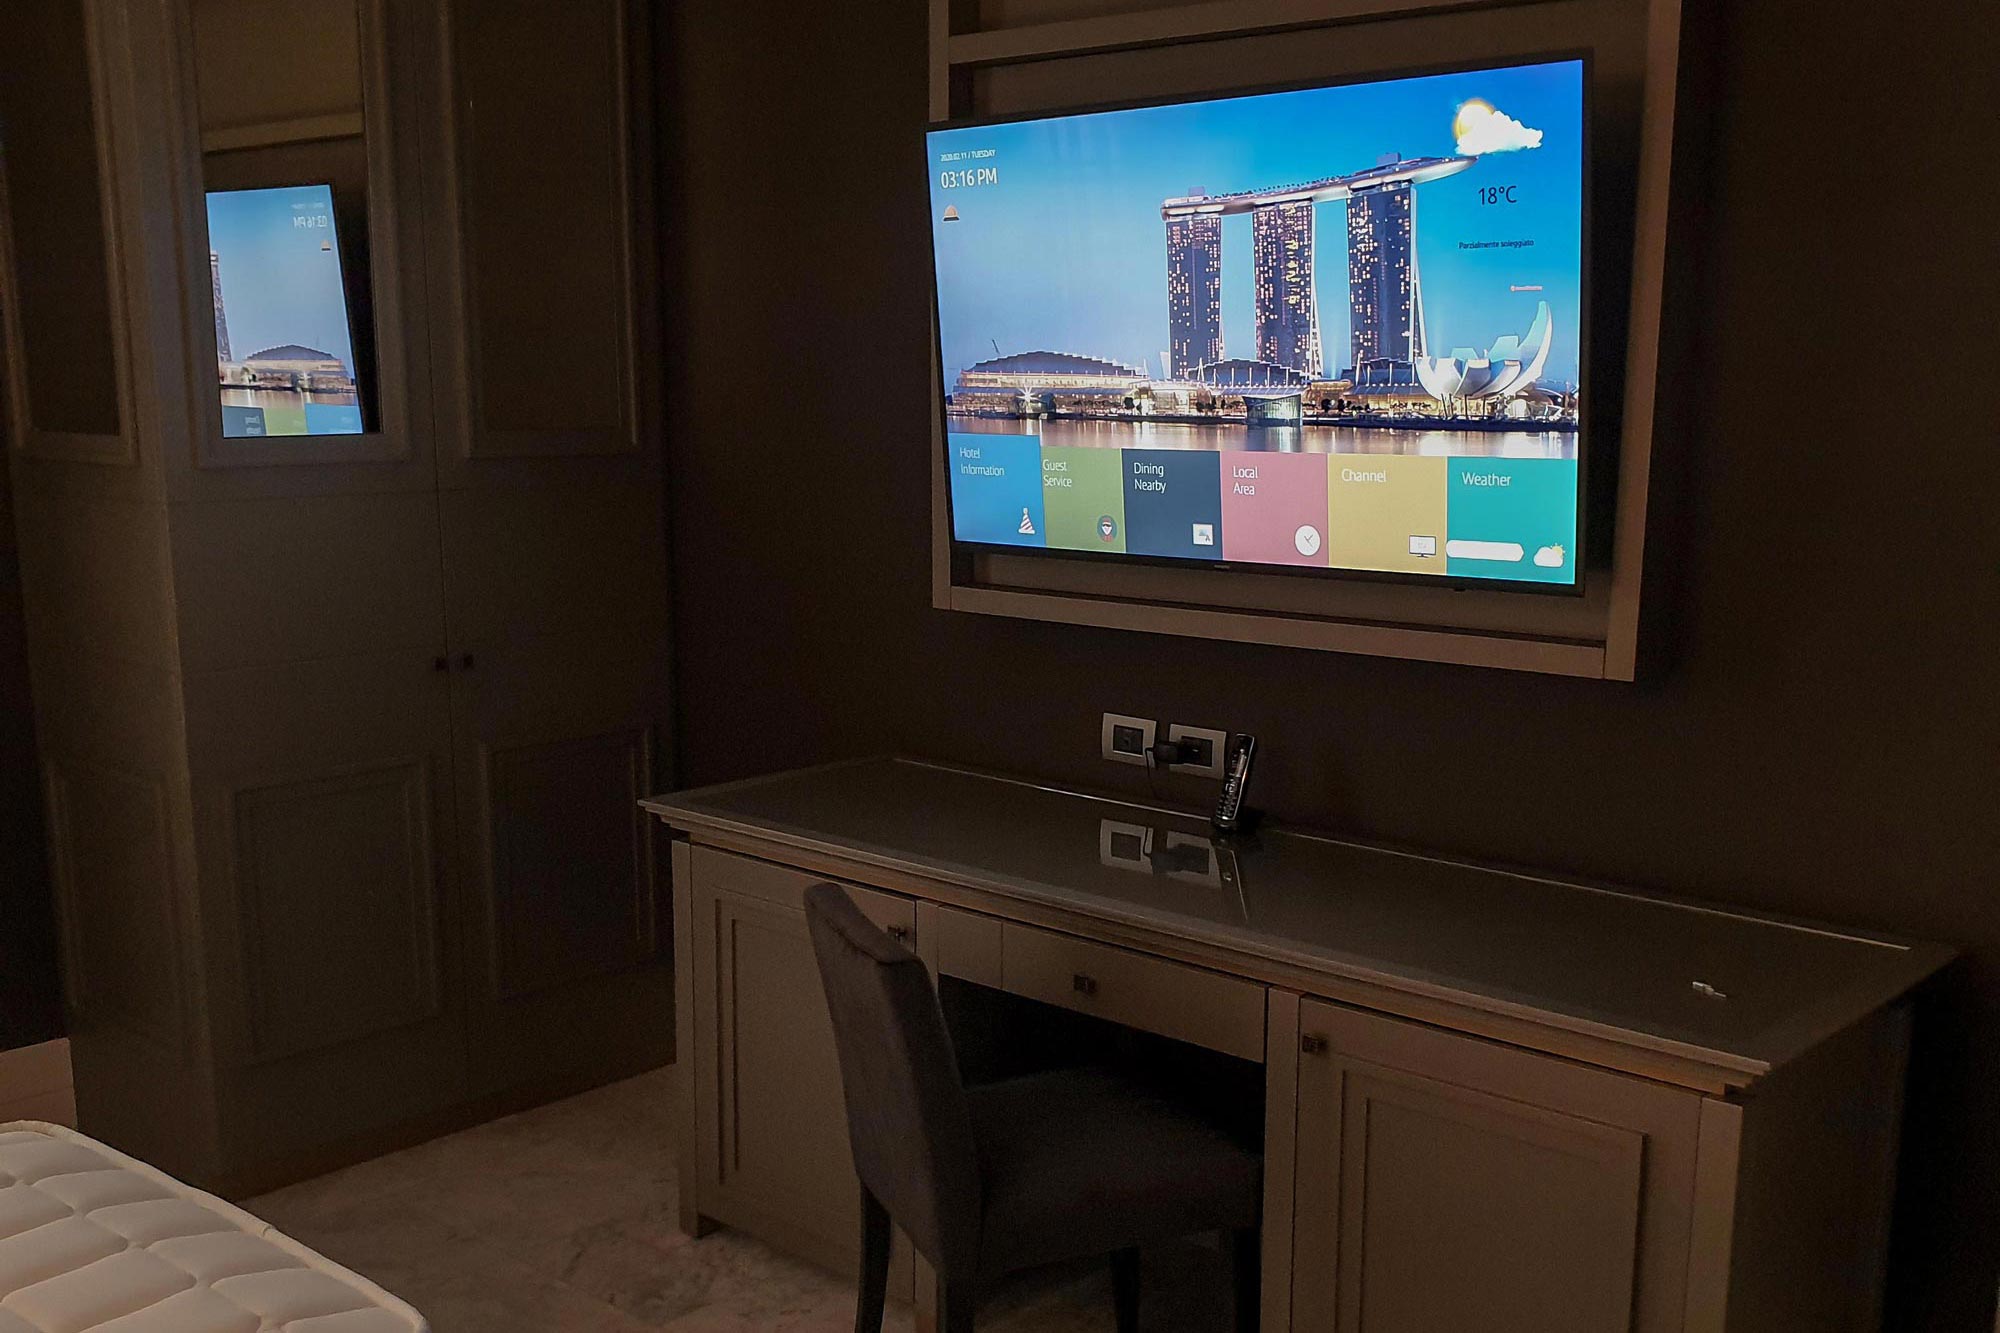 Samsung Hotel TV installato a parete con cornice in tinta con l'arredamento